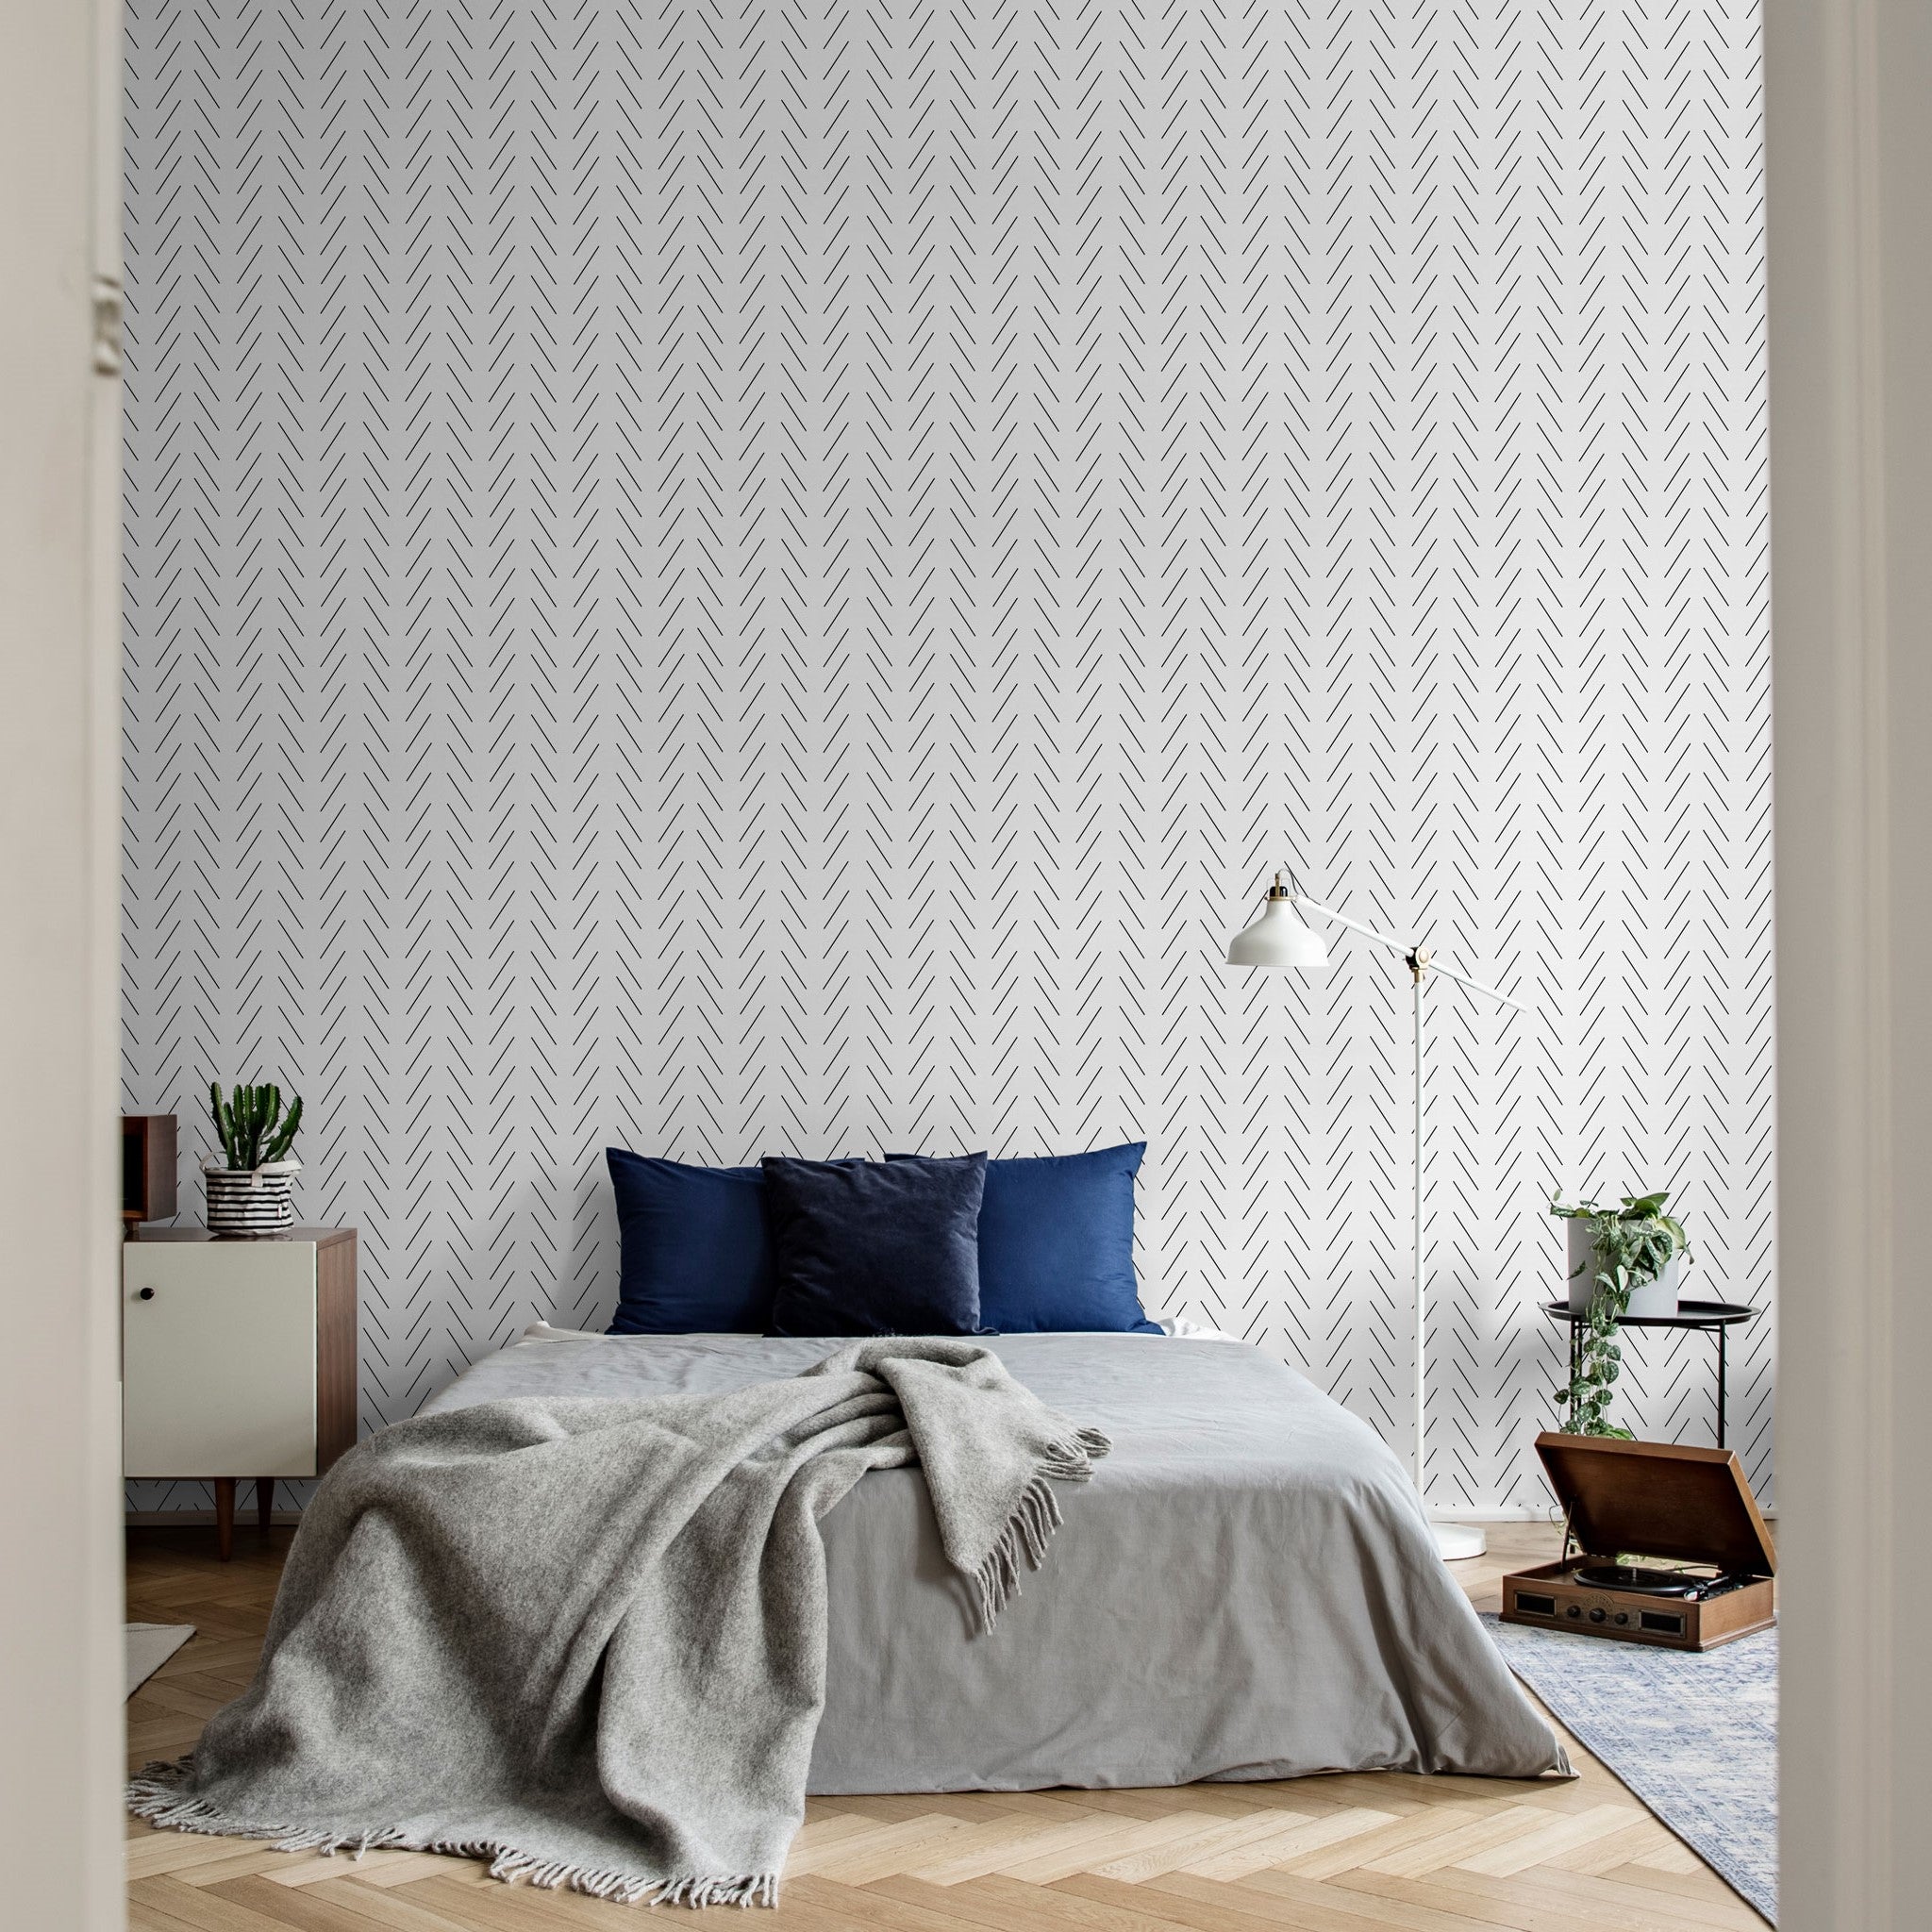 Oliver' - Scandinavian Inspired Wallpaper By Chelsea Houska DeBoer